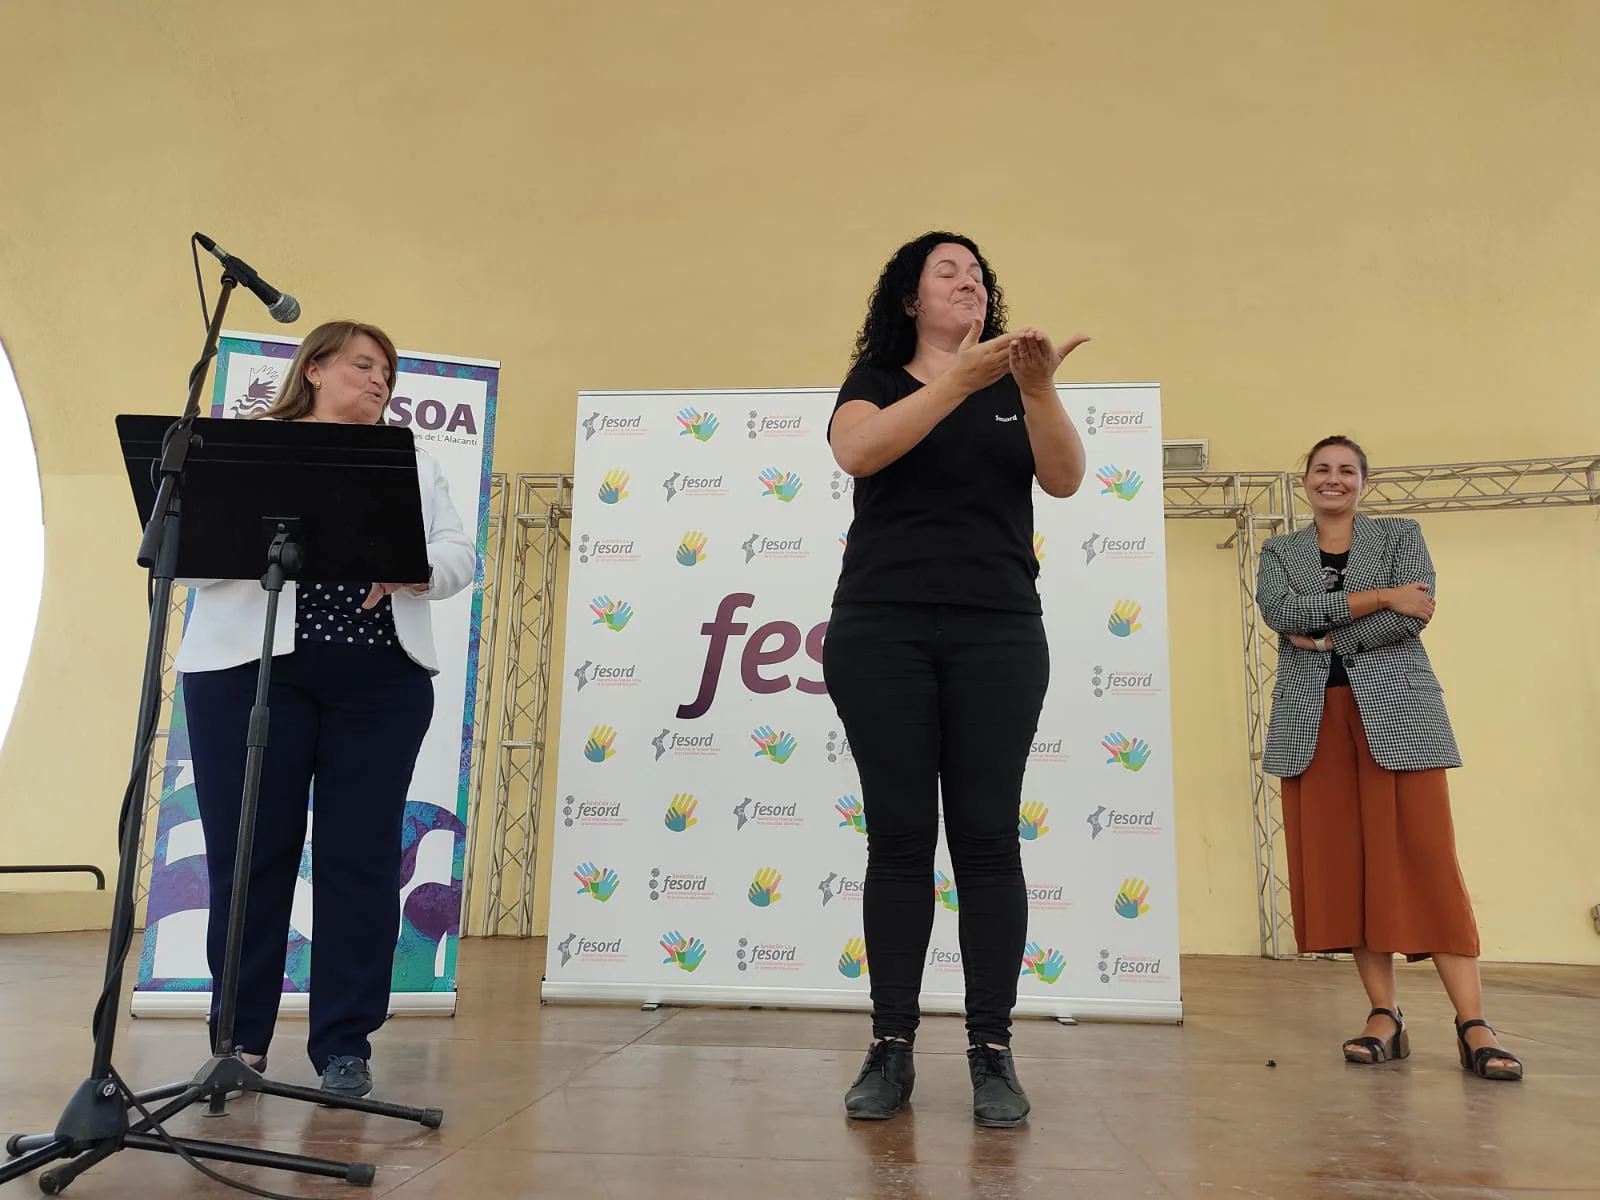 Acto organizado por Fesord en Alicante.